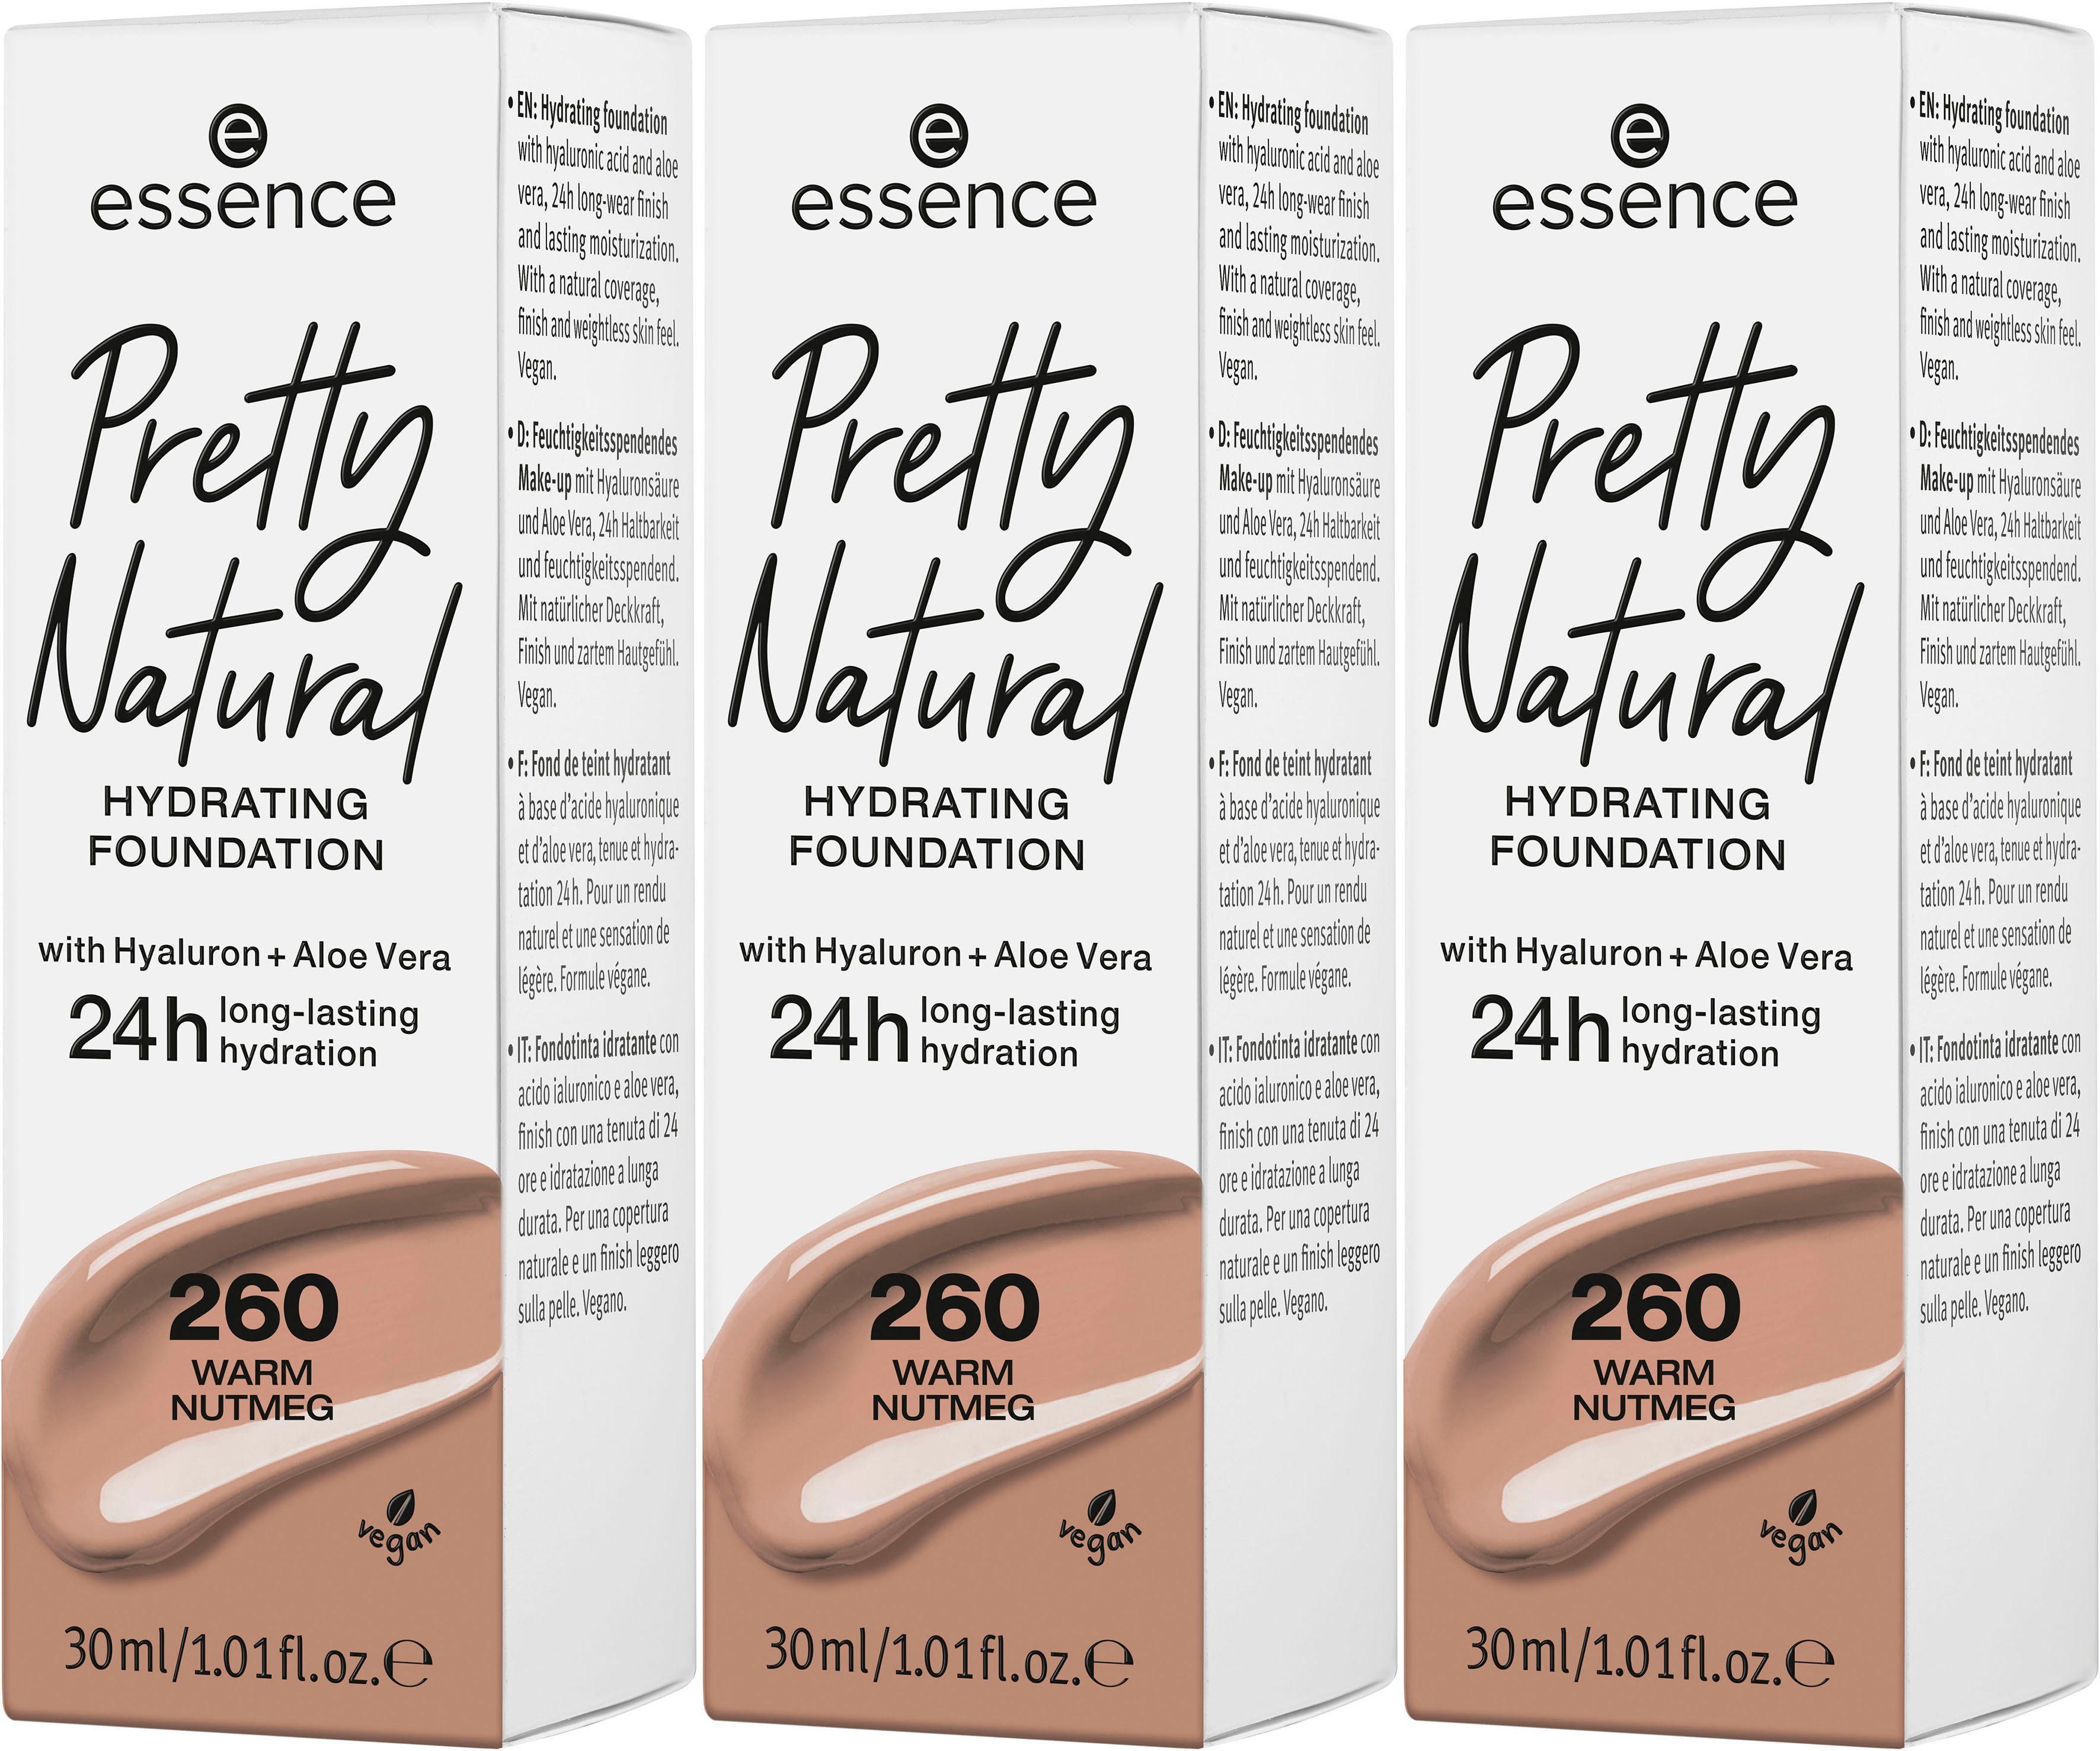 Essence Foundation Nutmeg Pretty 3-tlg. Natural Warm HYDRATING